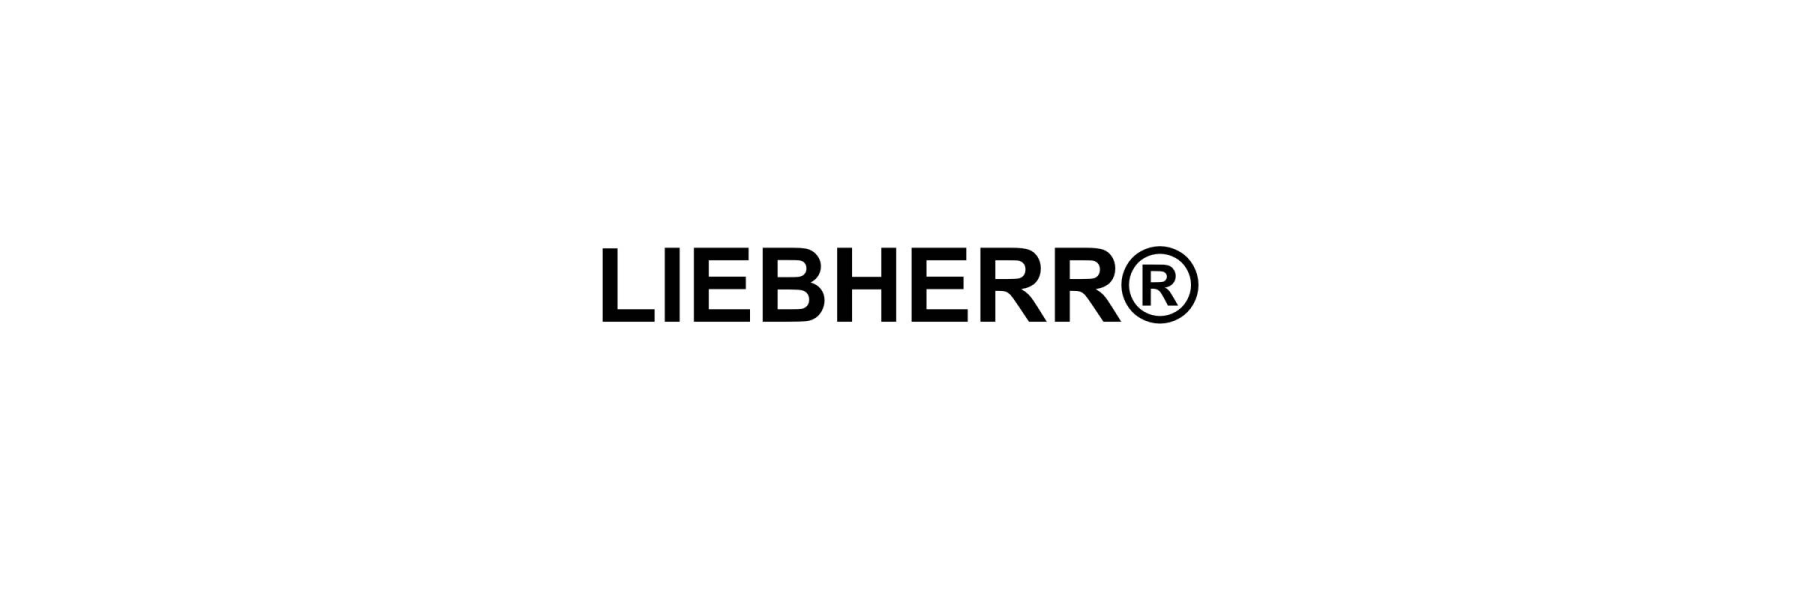  LIEBHERR ORIGINAL SPARE PARTS 

 Liebherr is a...